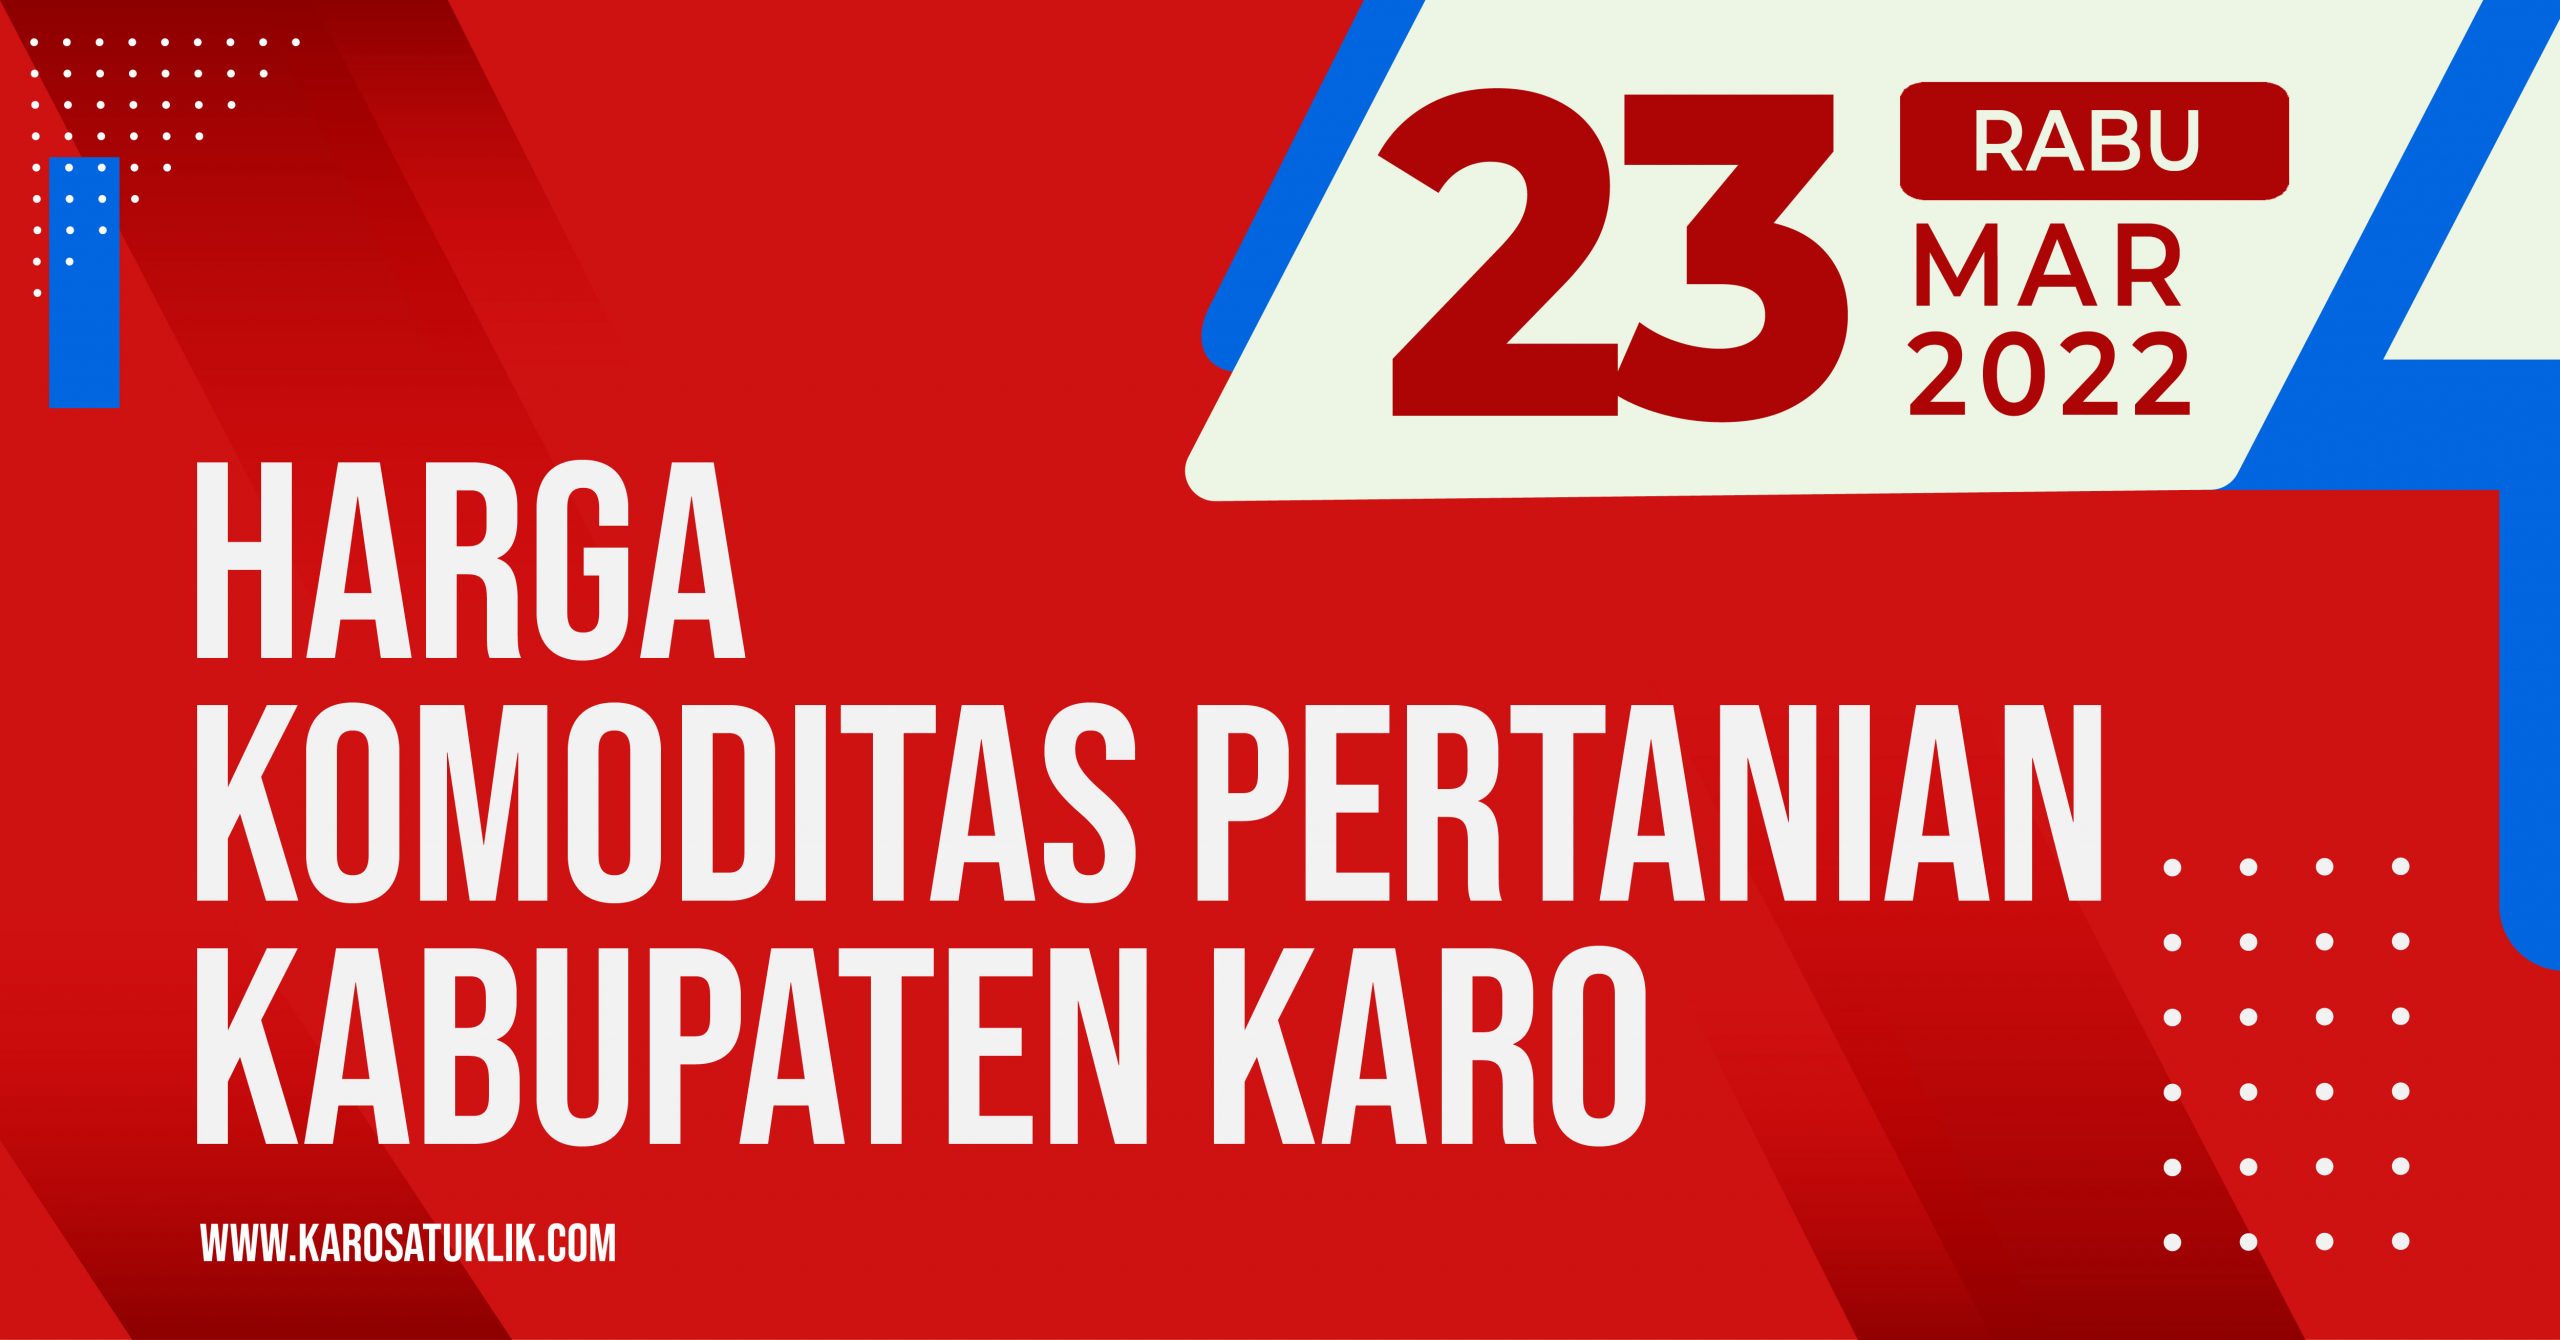 Daftar Harga Komoditas Pertanian Kabupaten Karo, 23 Maret 2022